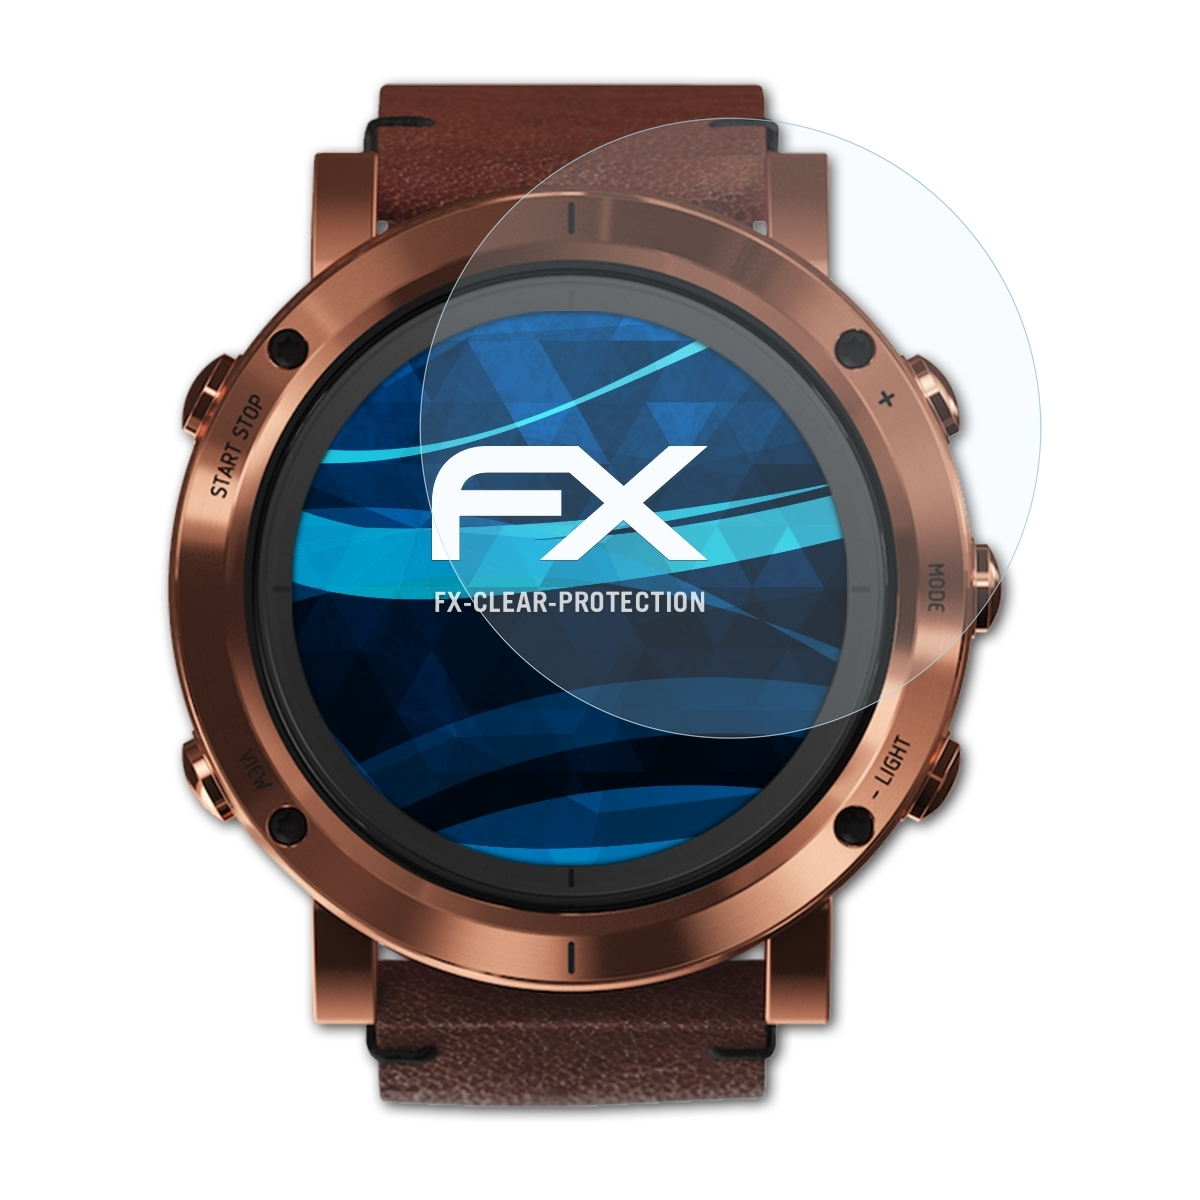 ATFOLIX Displayschutz(für Essential) 3x Suunto FX-Clear